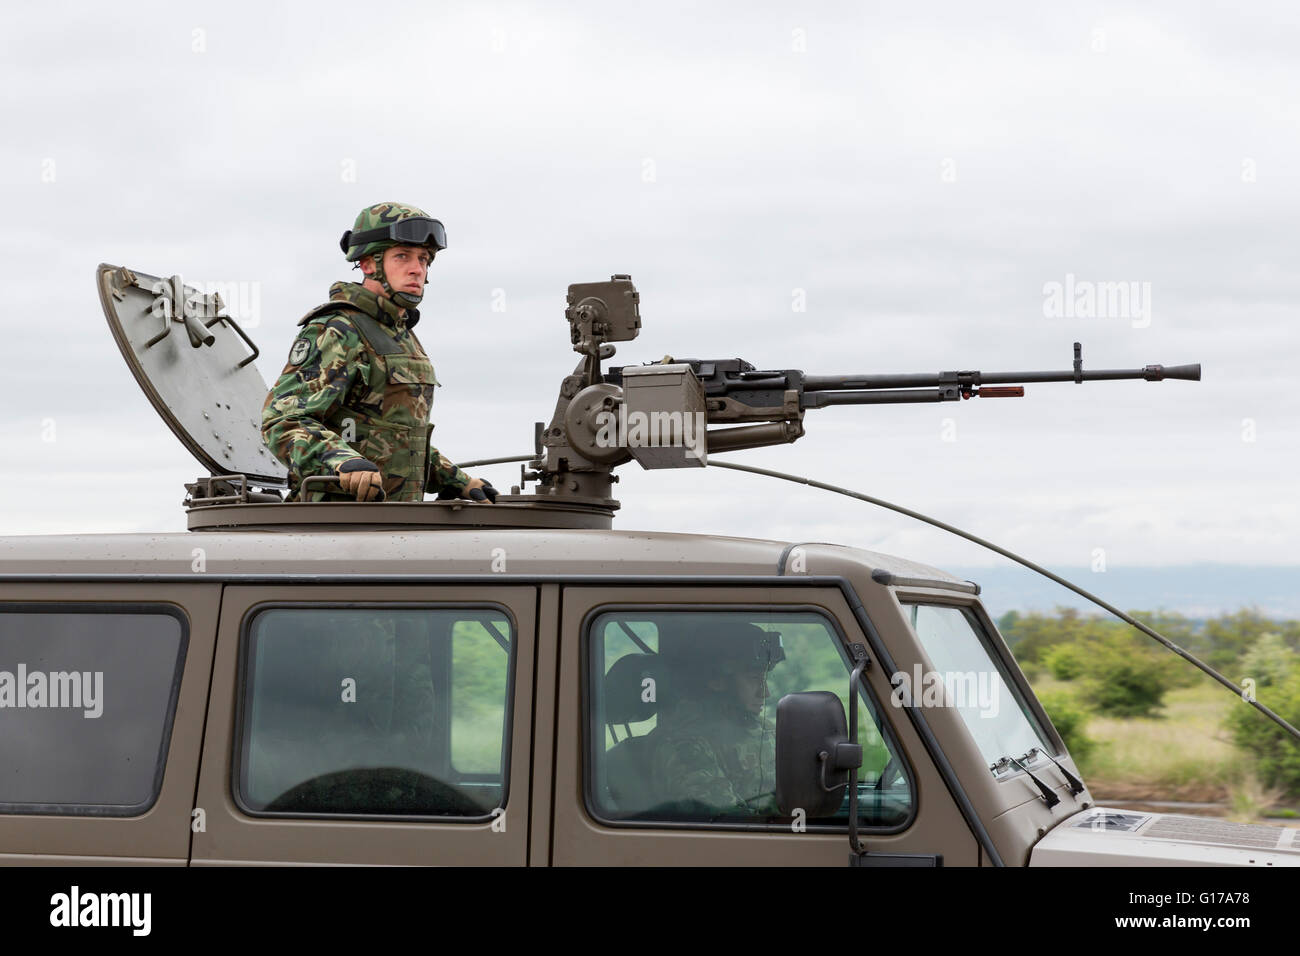 Sofia, Bulgaria - Mayo 4, 2016: vehículo militar con ametralladora pesada y un soldado. Growler - un ligero lavado transportables internamente Foto de stock